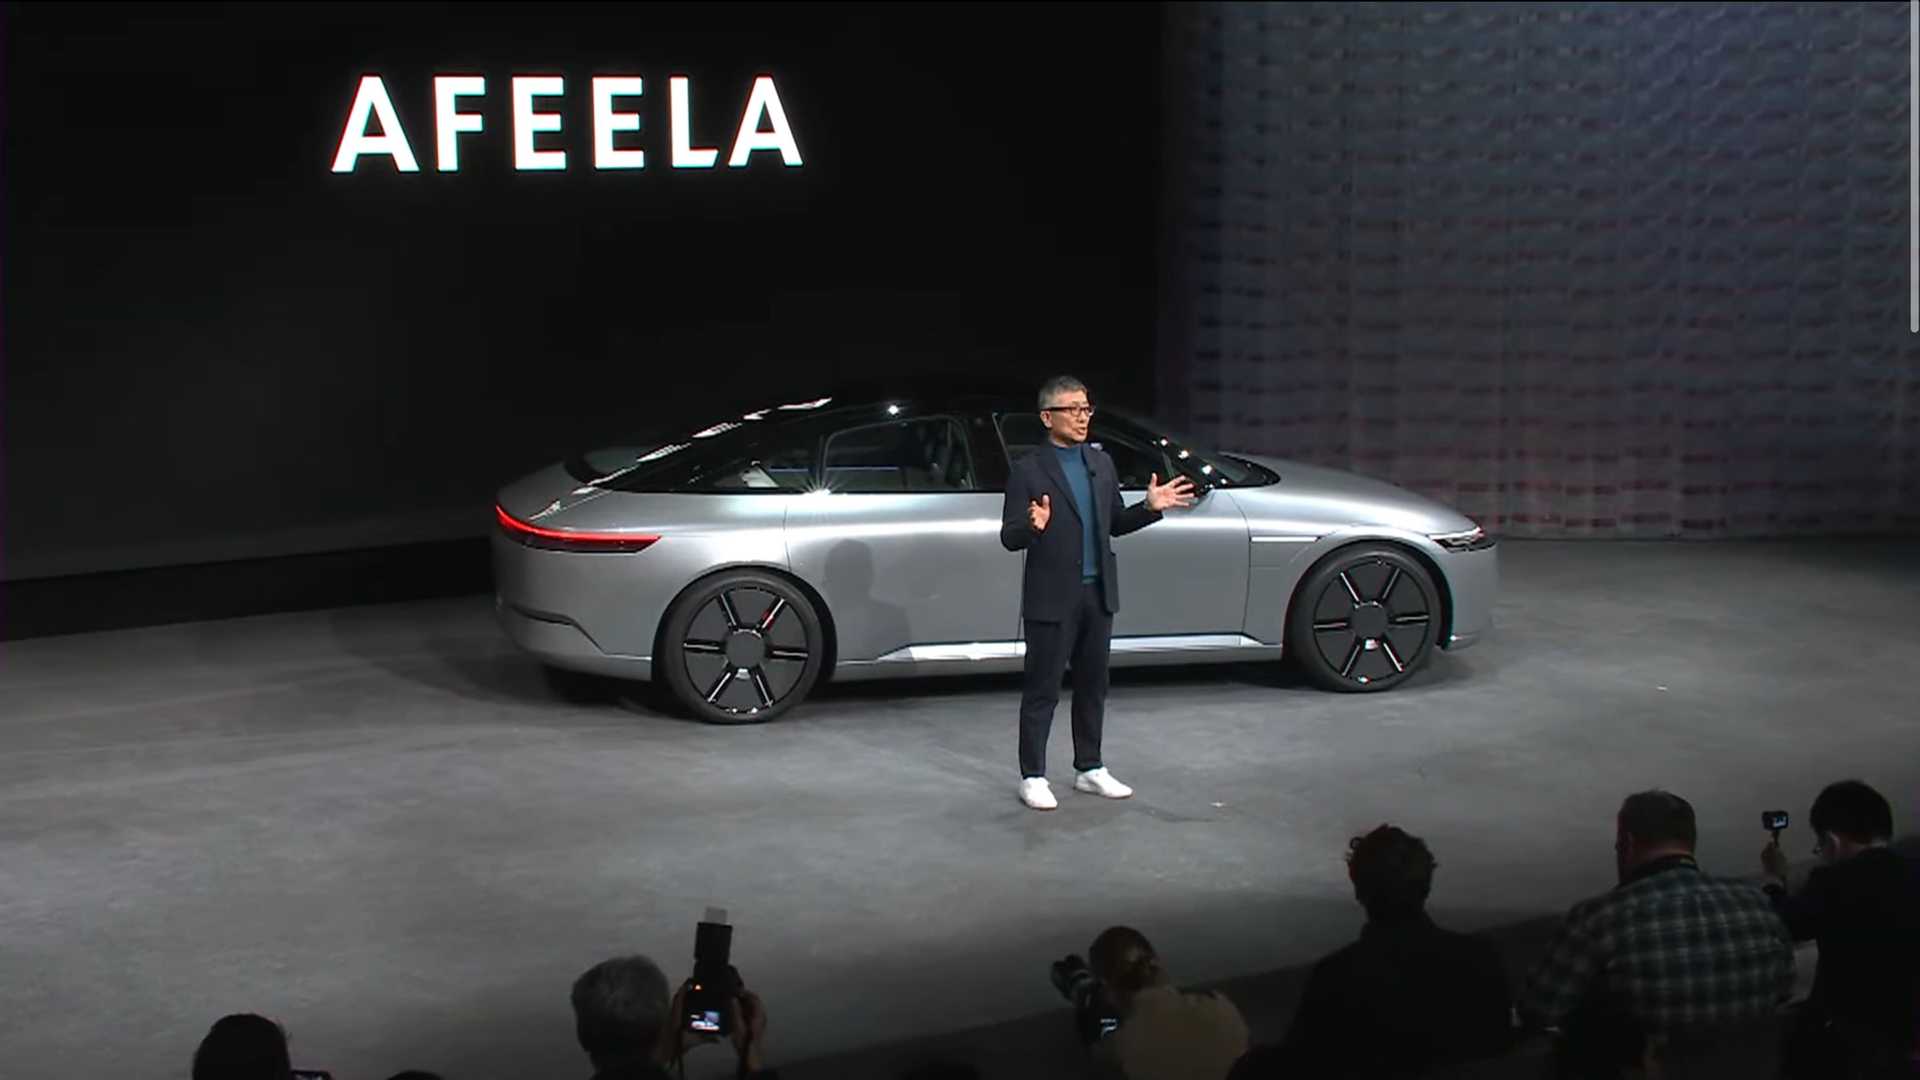 سوني تطلق علامتها التجارية الجديدة للسيارات رسمياً بالتعاون مع هوندا 3